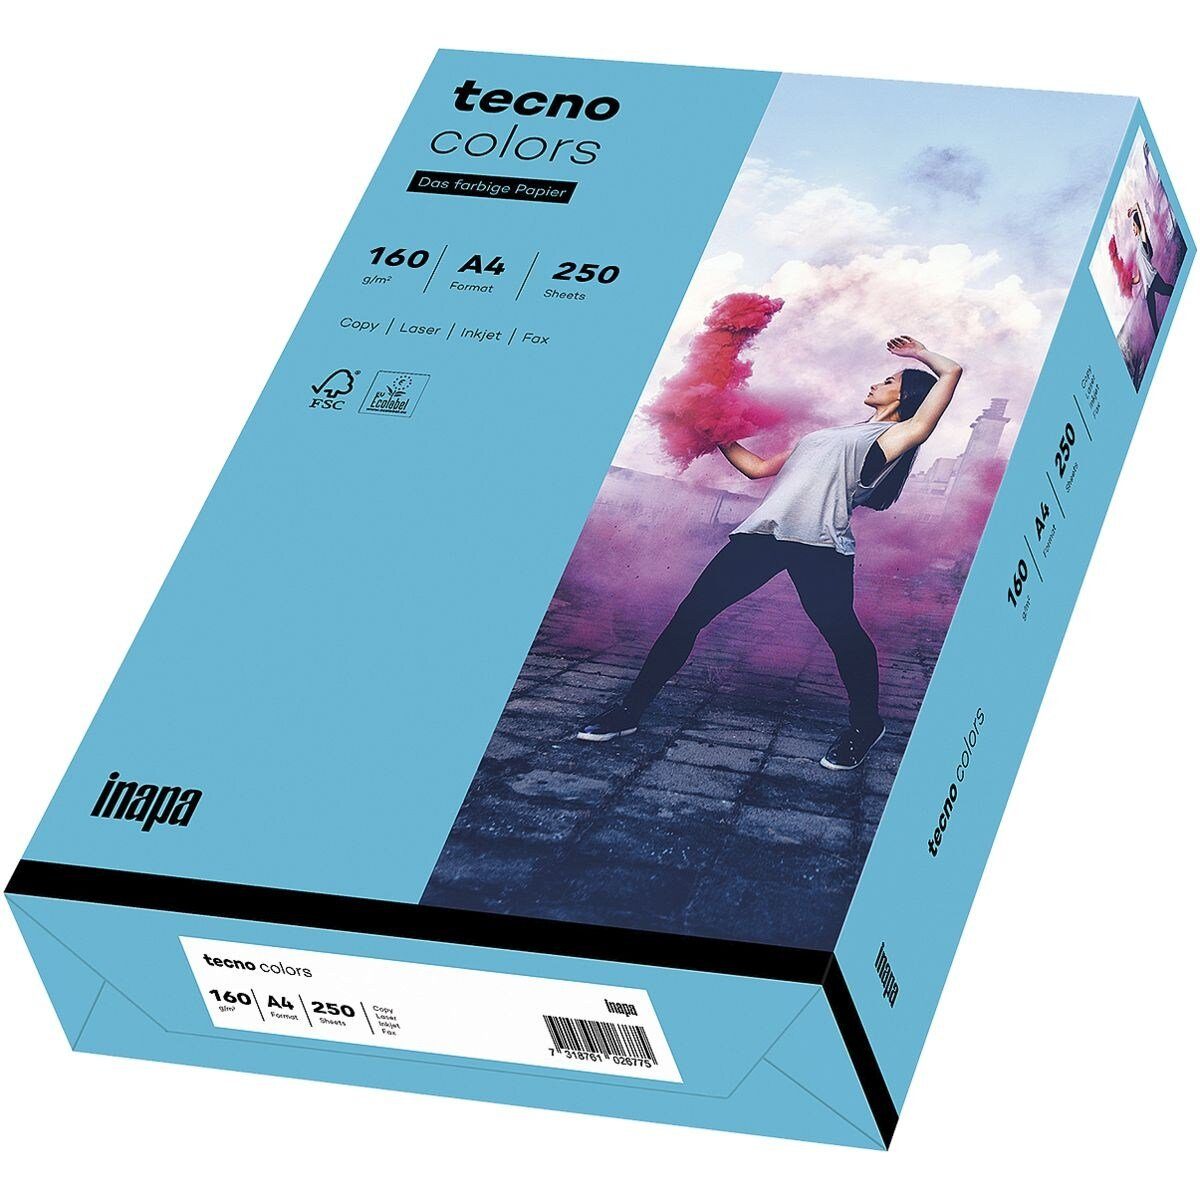 Rainbow tecno Drucker- Kopierpapier blau Intensivfarben, und g/m², DIN Format tecno Inapa 160 Blatt / 250 A4, Colors,